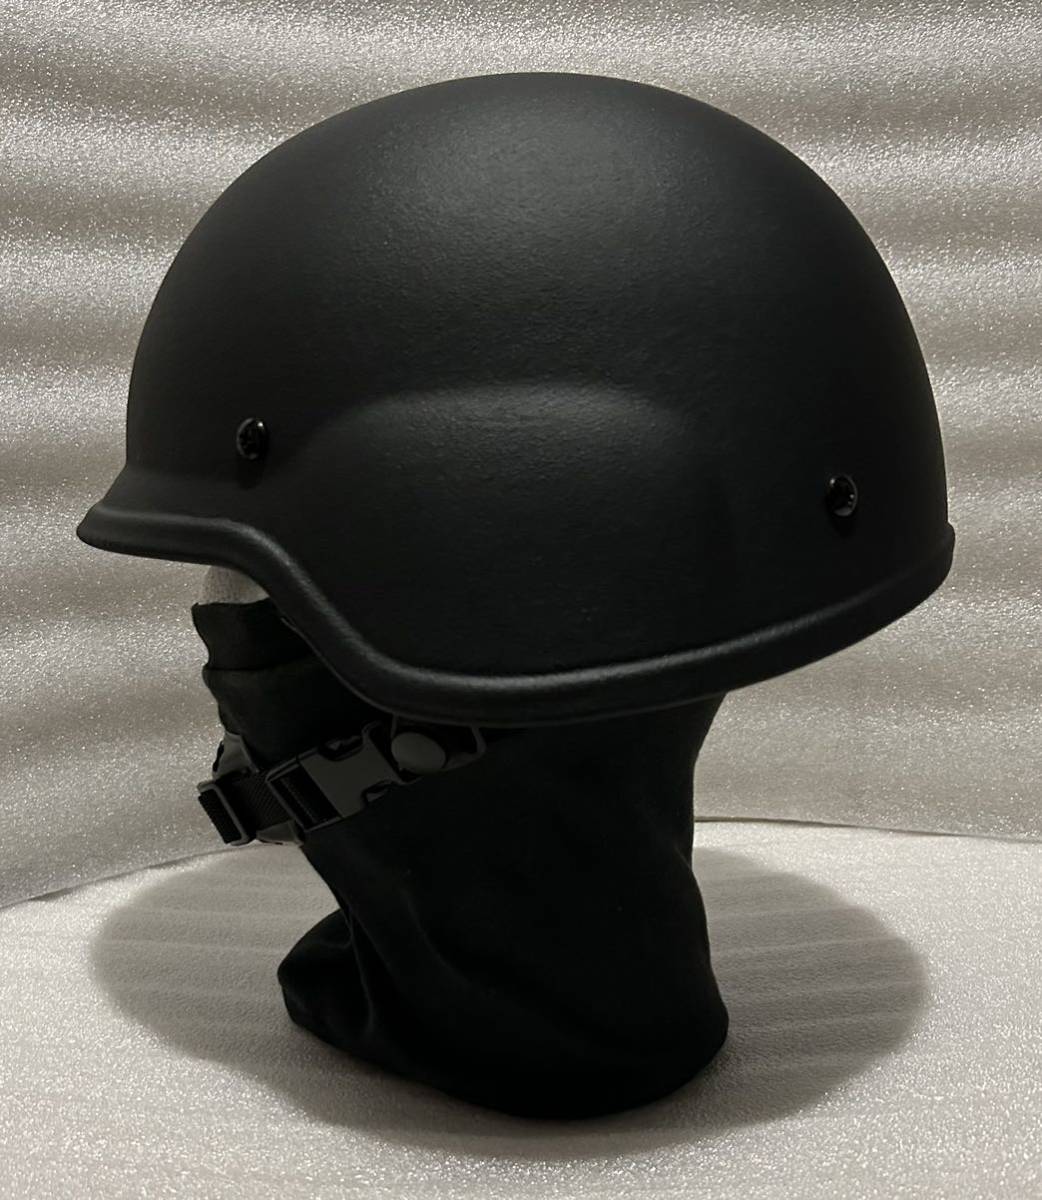 送料無料 防弾ヘルメット(実物) 2024 1製造 58〜62cm NIJレベル3a 9mm 357sig 44mag 新品 戦地取材 防災 警護 警備 の画像3